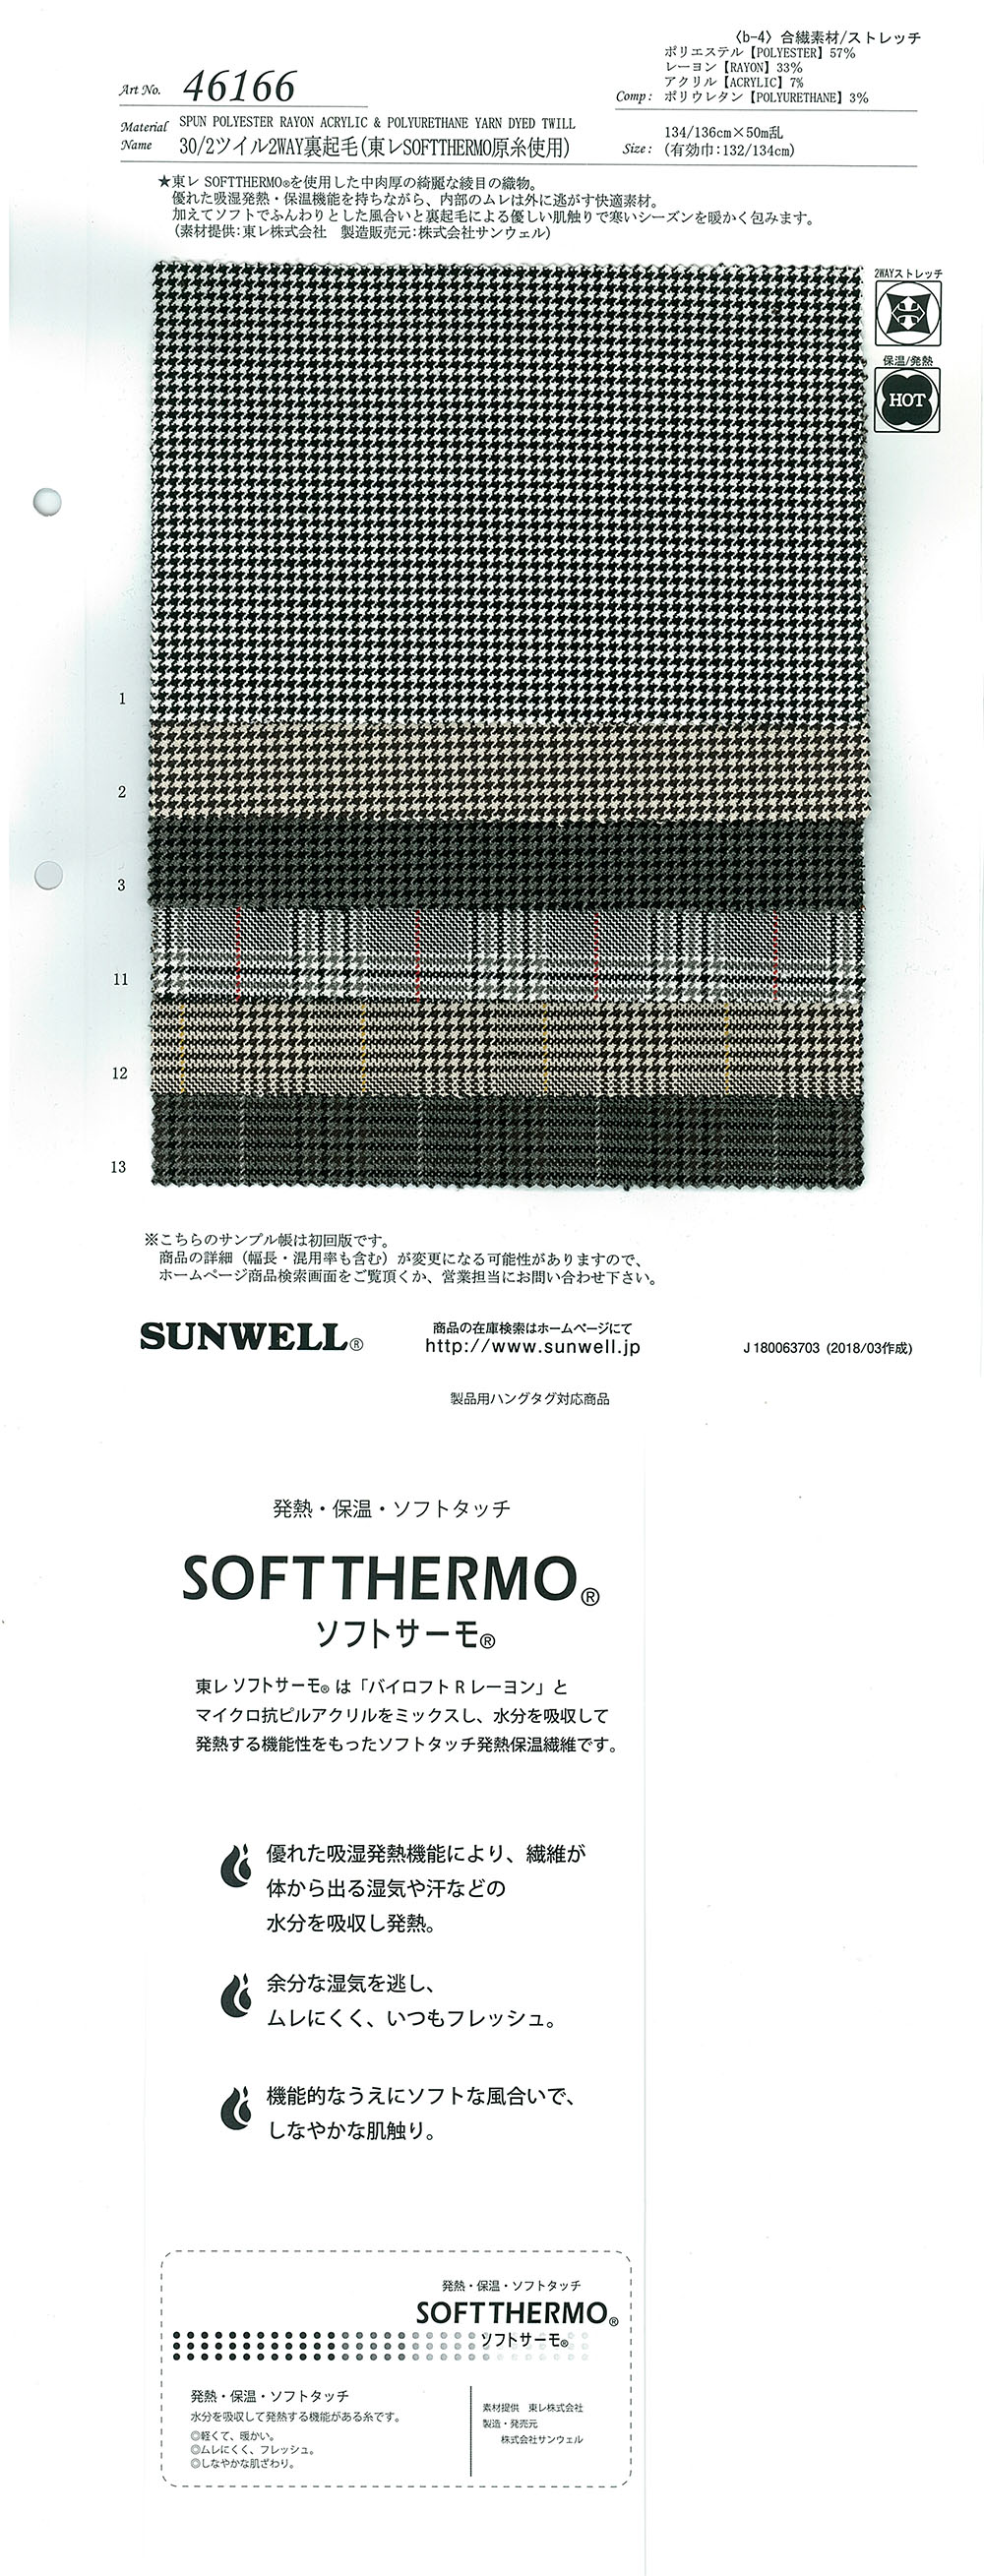 46166 Forro Difuso Bidireccional De Sarga 30/2 (Con Hilo TORAY )[Fabrica Textil] SUNWELL